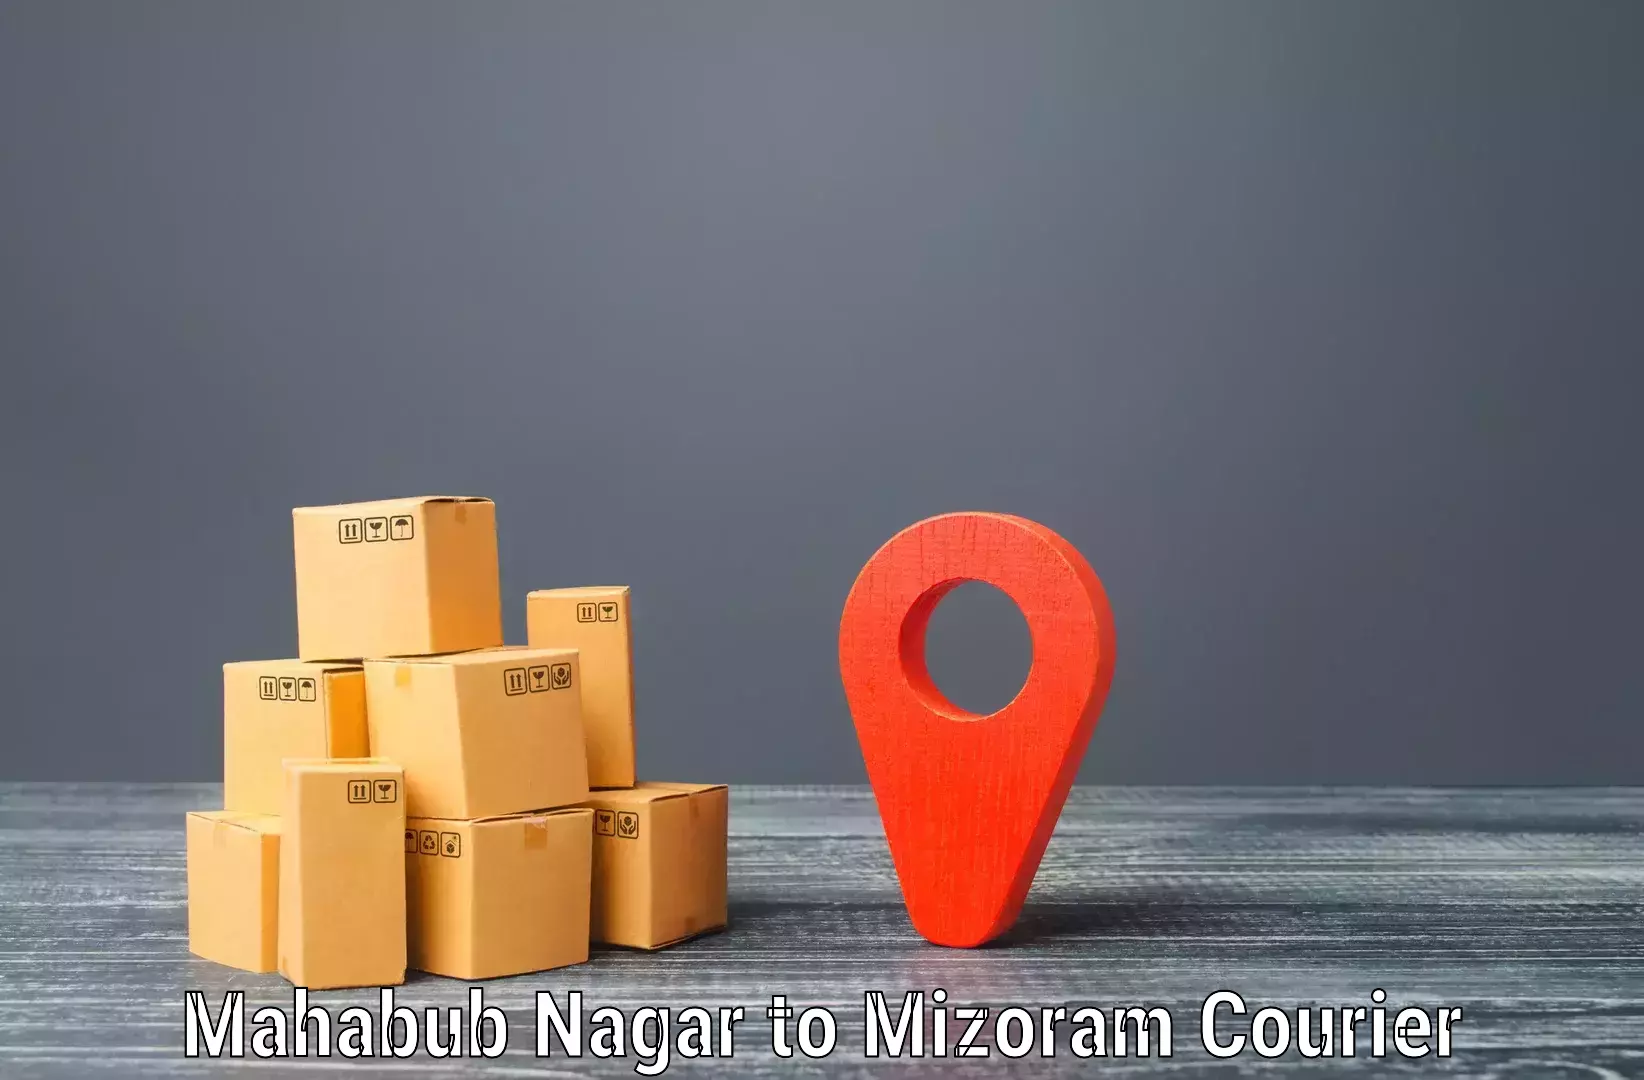 Expedited shipping methods Mahabub Nagar to Mizoram